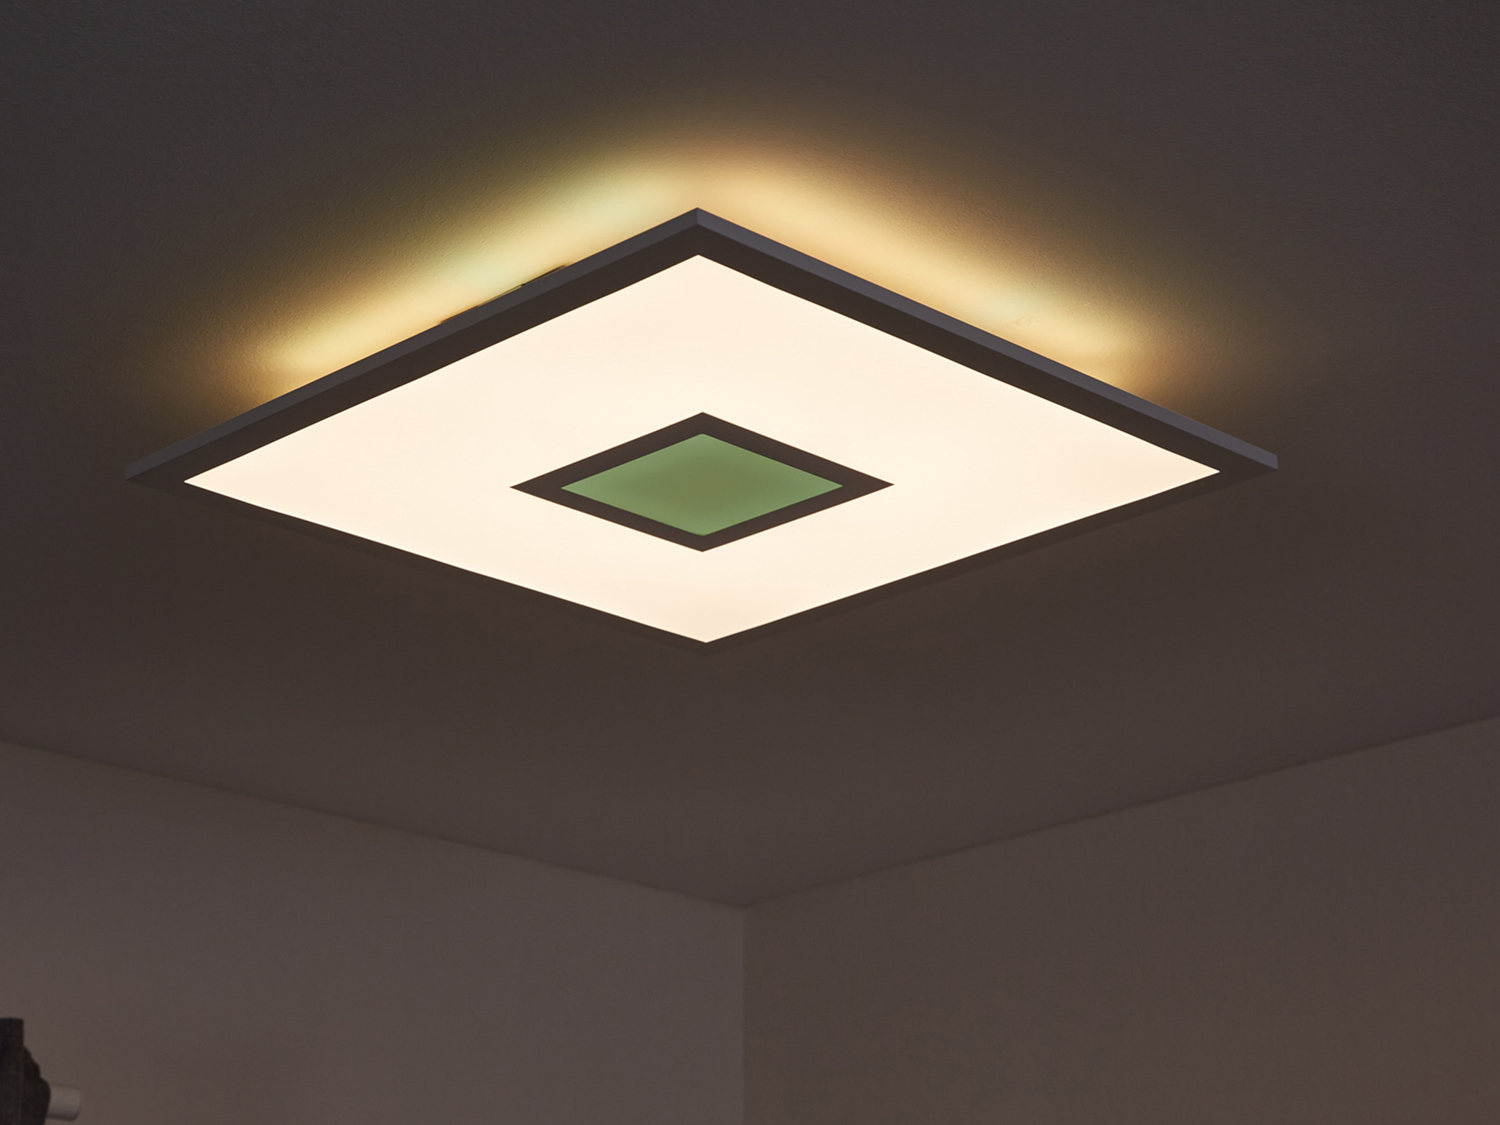 Pannello LED da soffitto Livarno, prezzo 39.99 &#8364; 
- Lampada dimmerabile ...